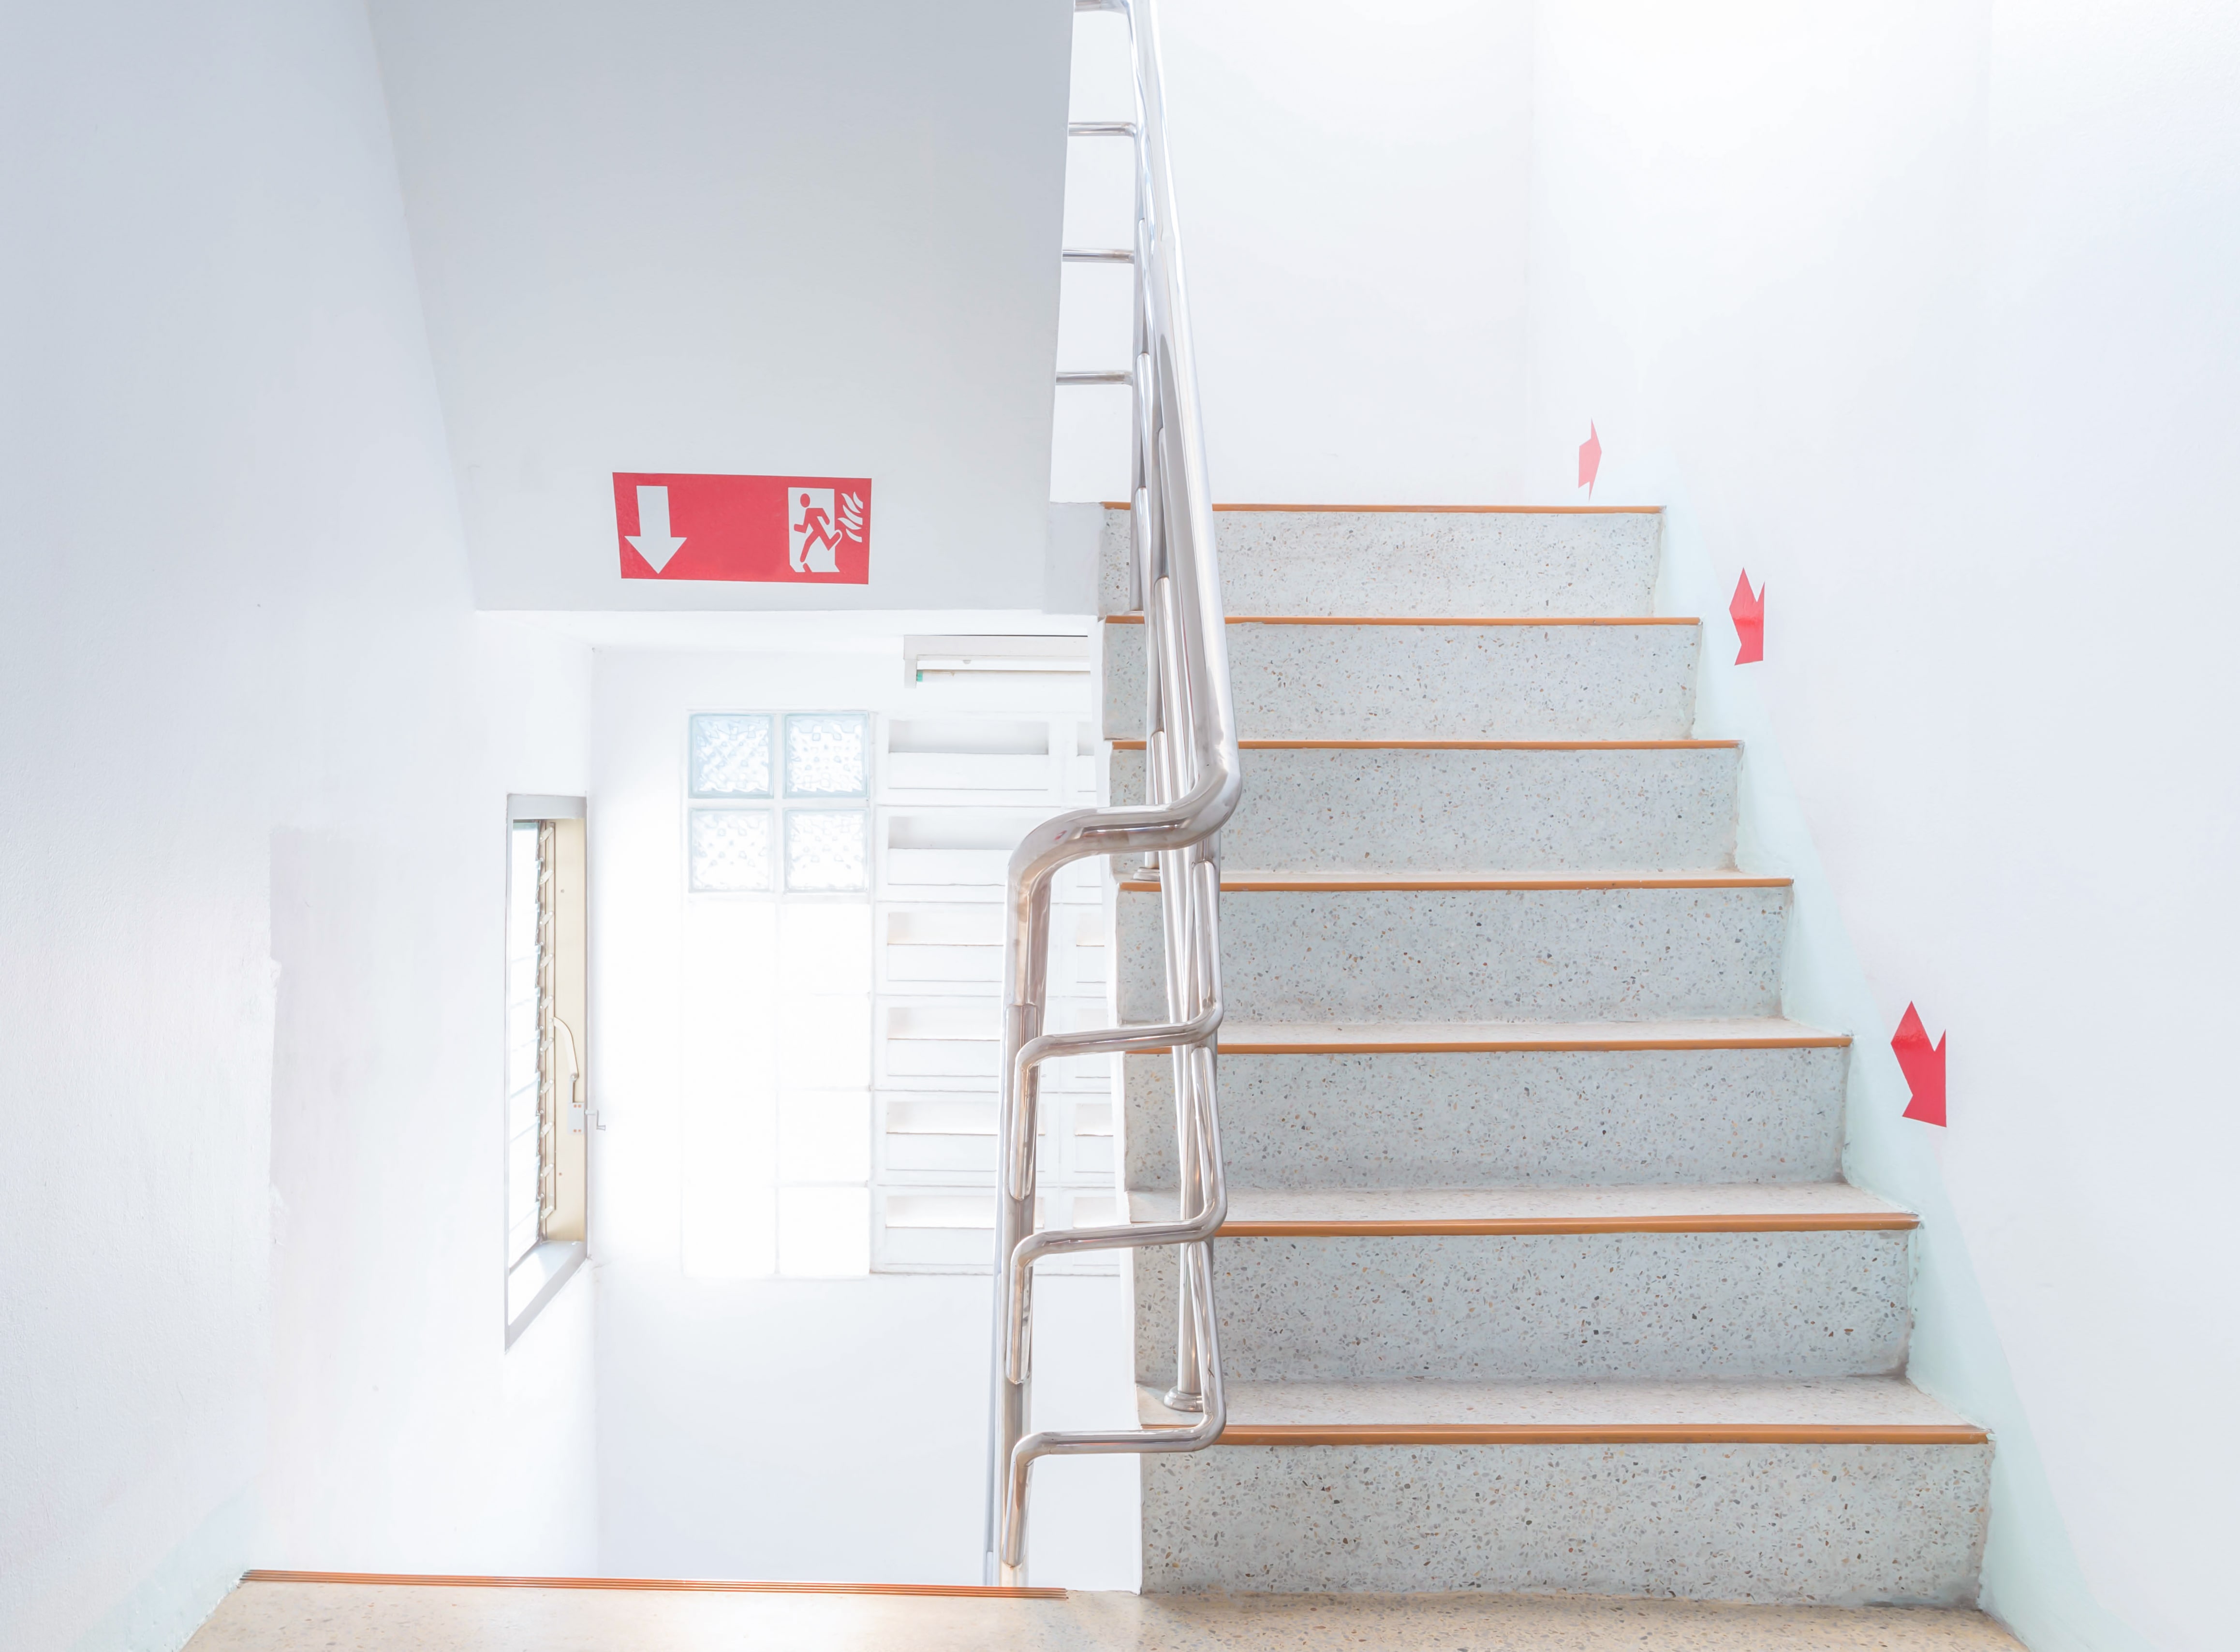 Entenda a importância da sinalização de escadas fixas para acessibilidade em locais públicos